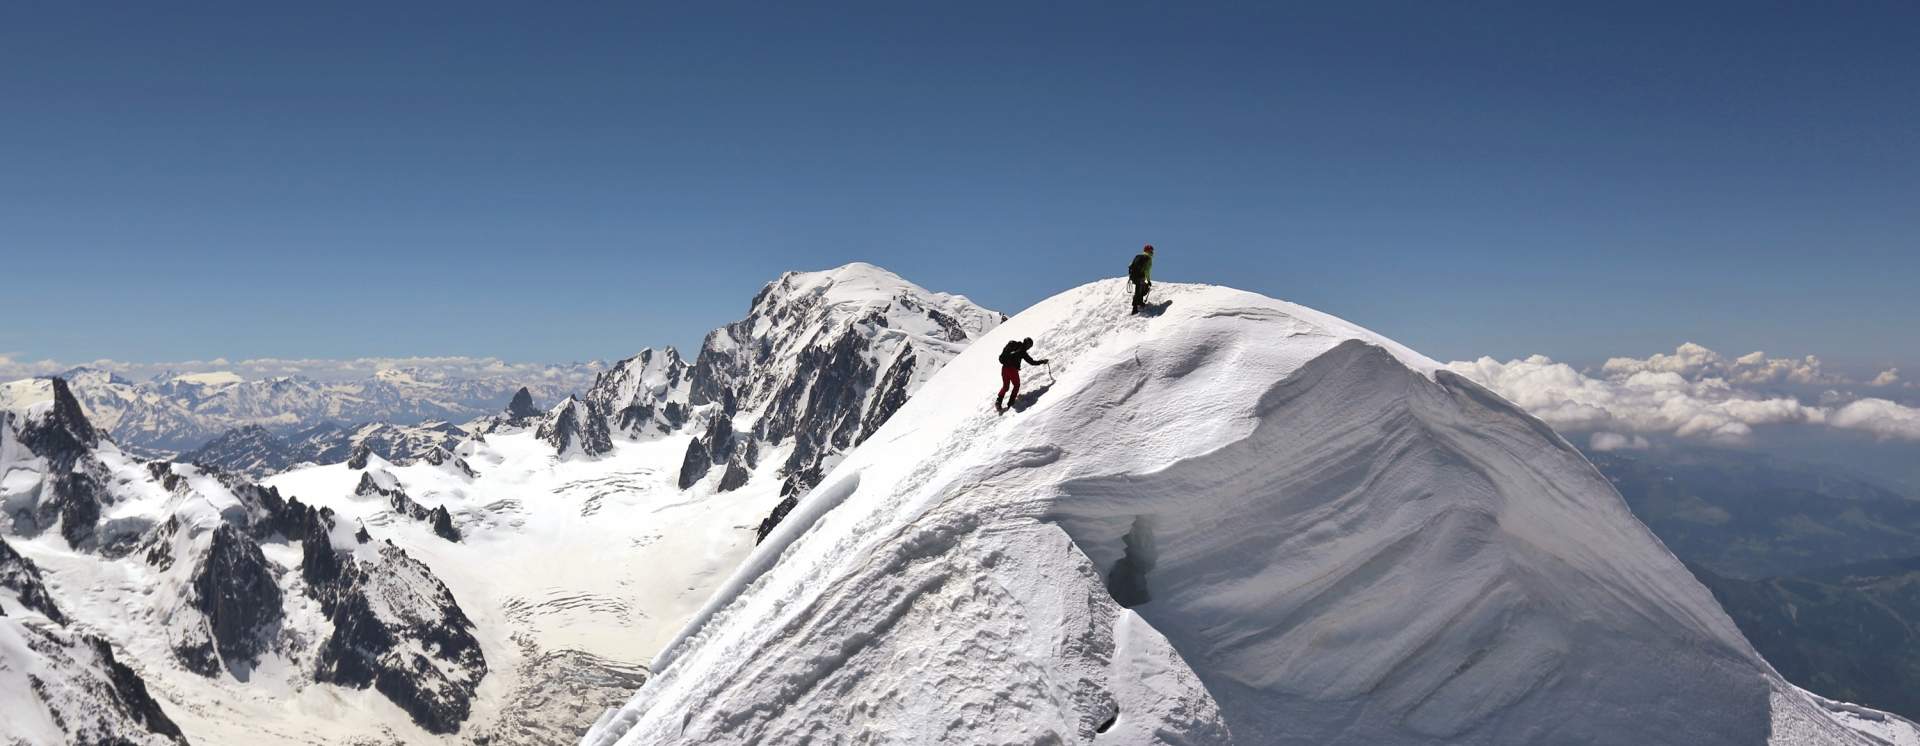 Une activité de plein air que vous aimeriez faire Alpinisme%20aiguille%20verte